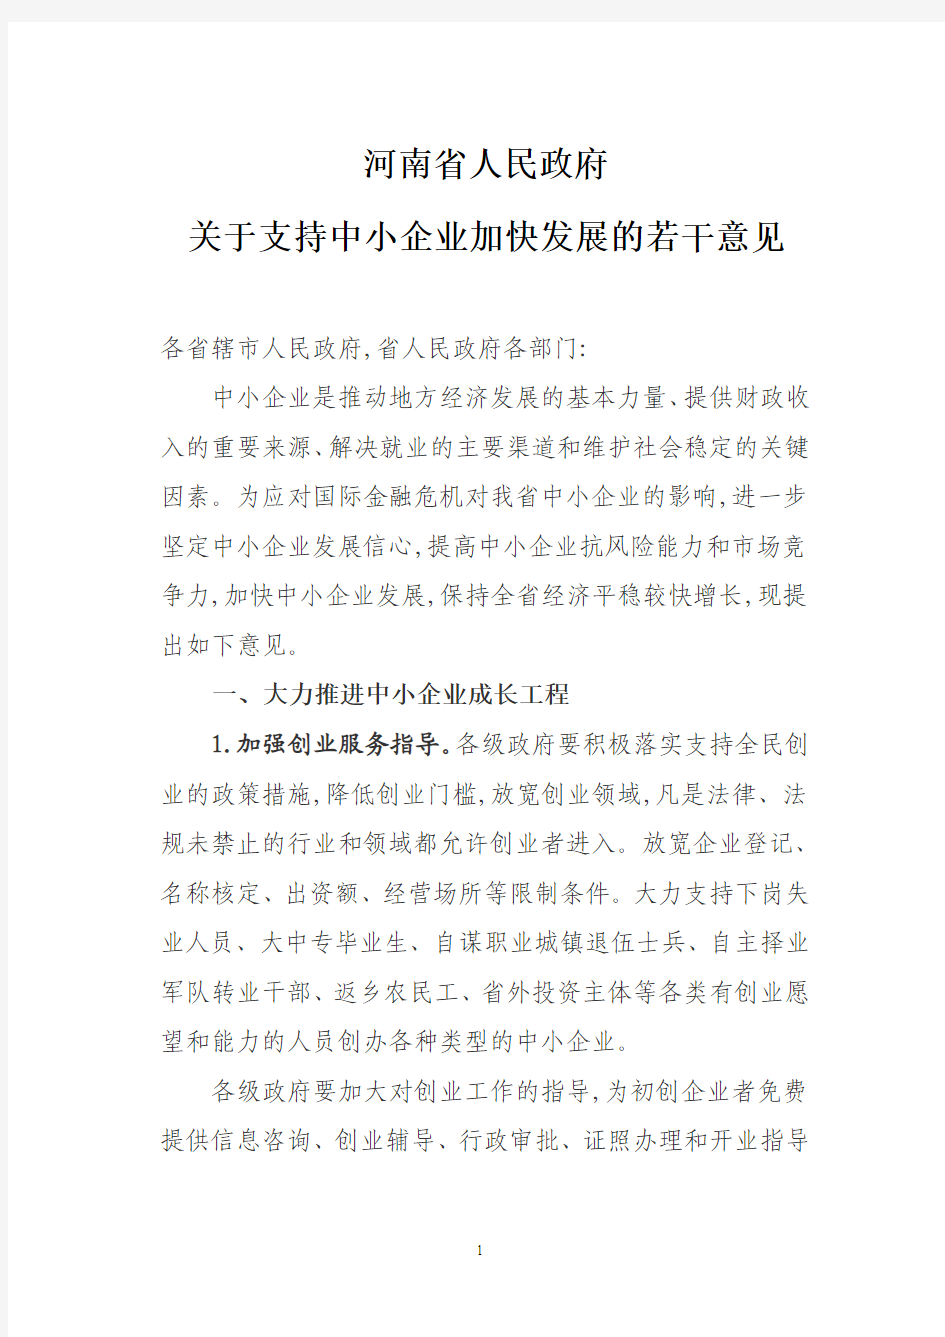 河南省人民政府关于加快中小企业发展若干意见